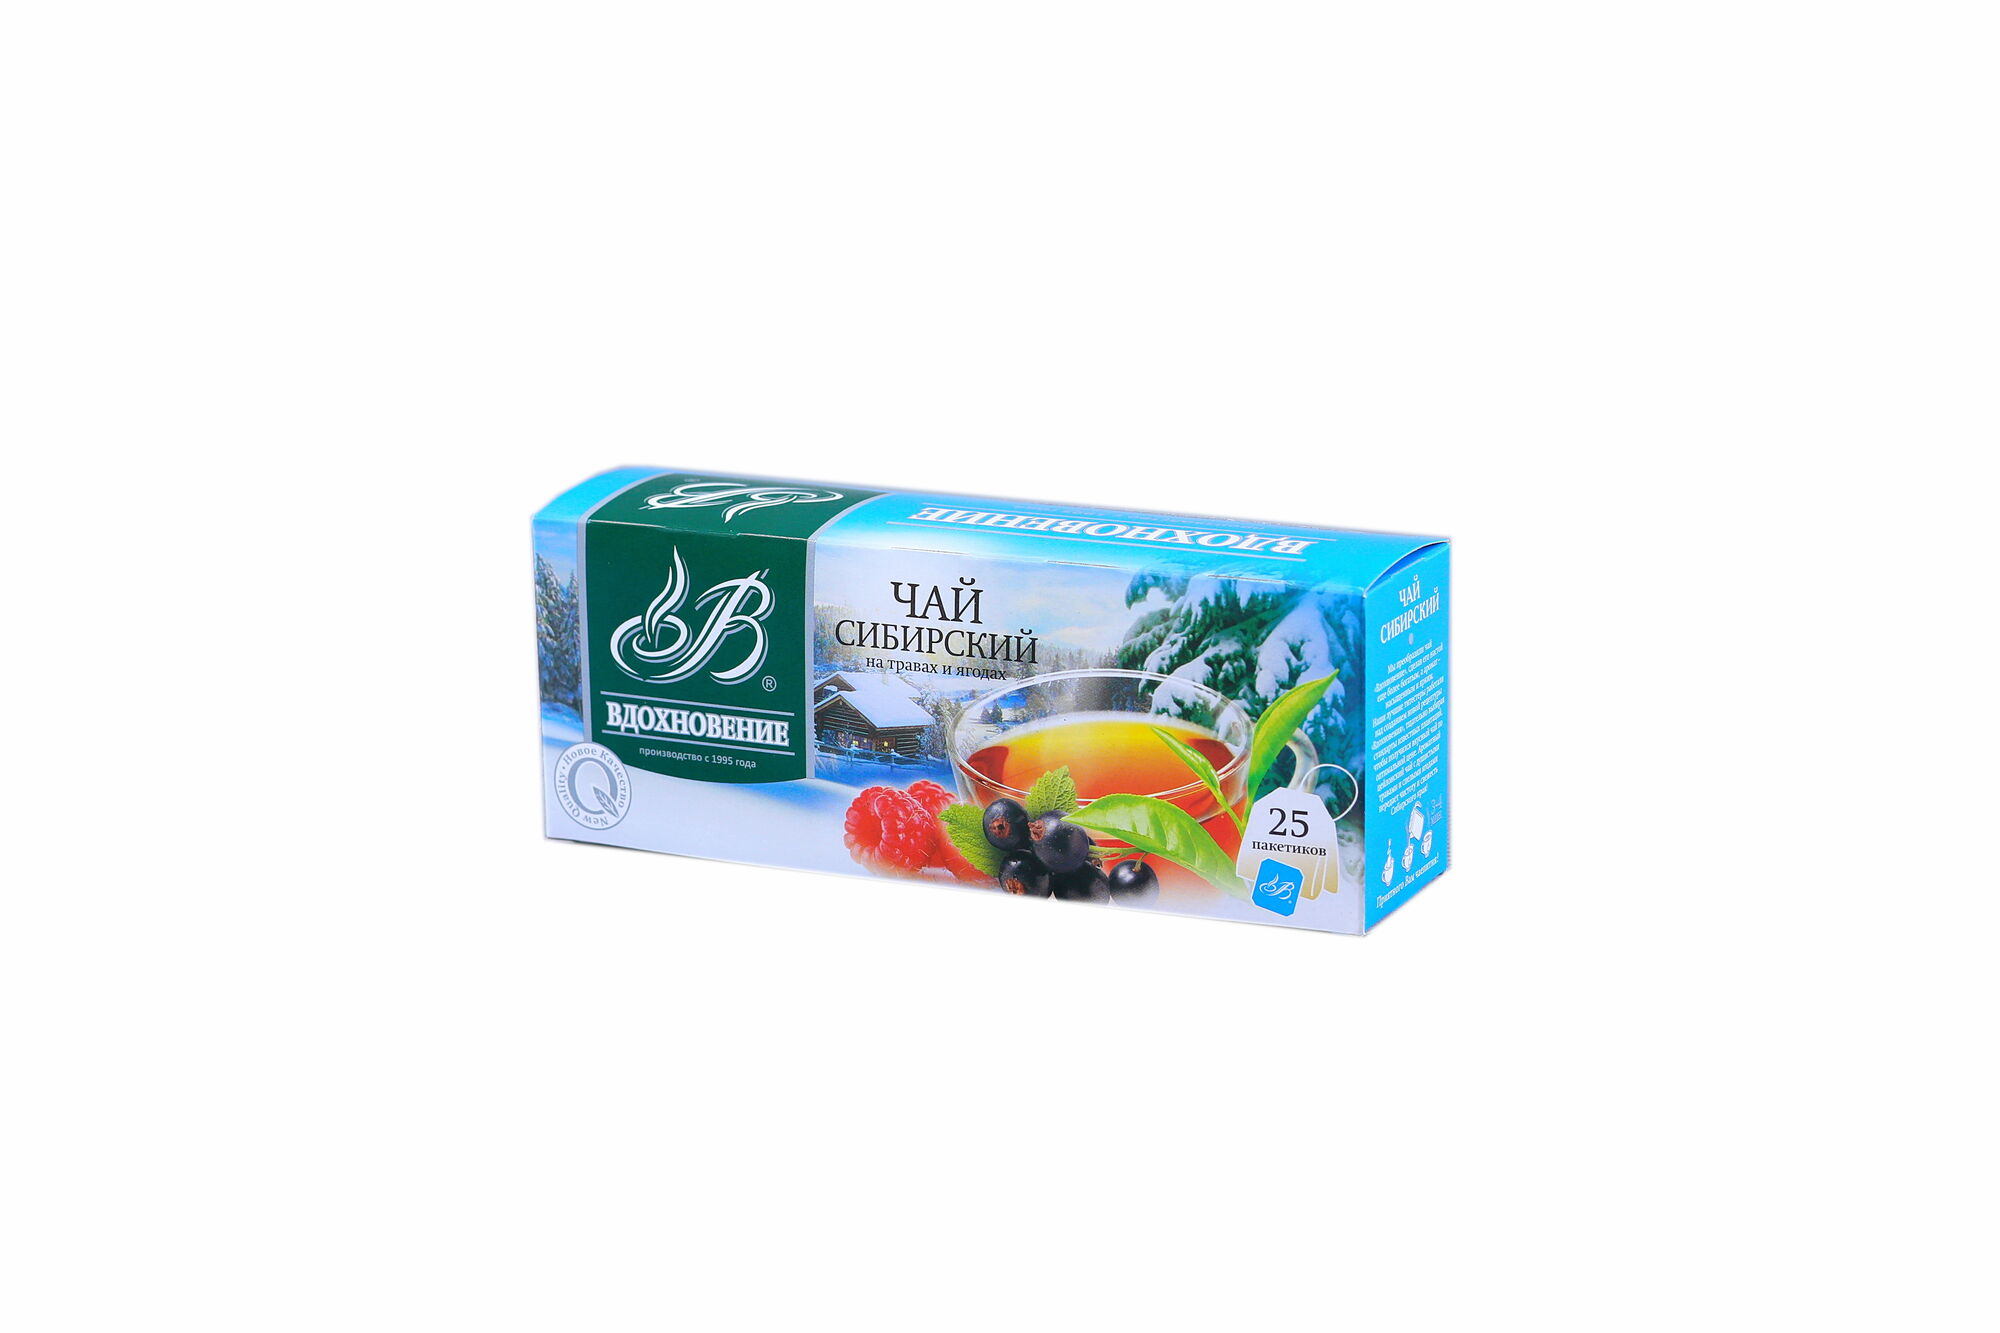 Чай Вдохновение Сибирский на травах и ягодах 25х1,5 черный (в коробке 21 шт) 4